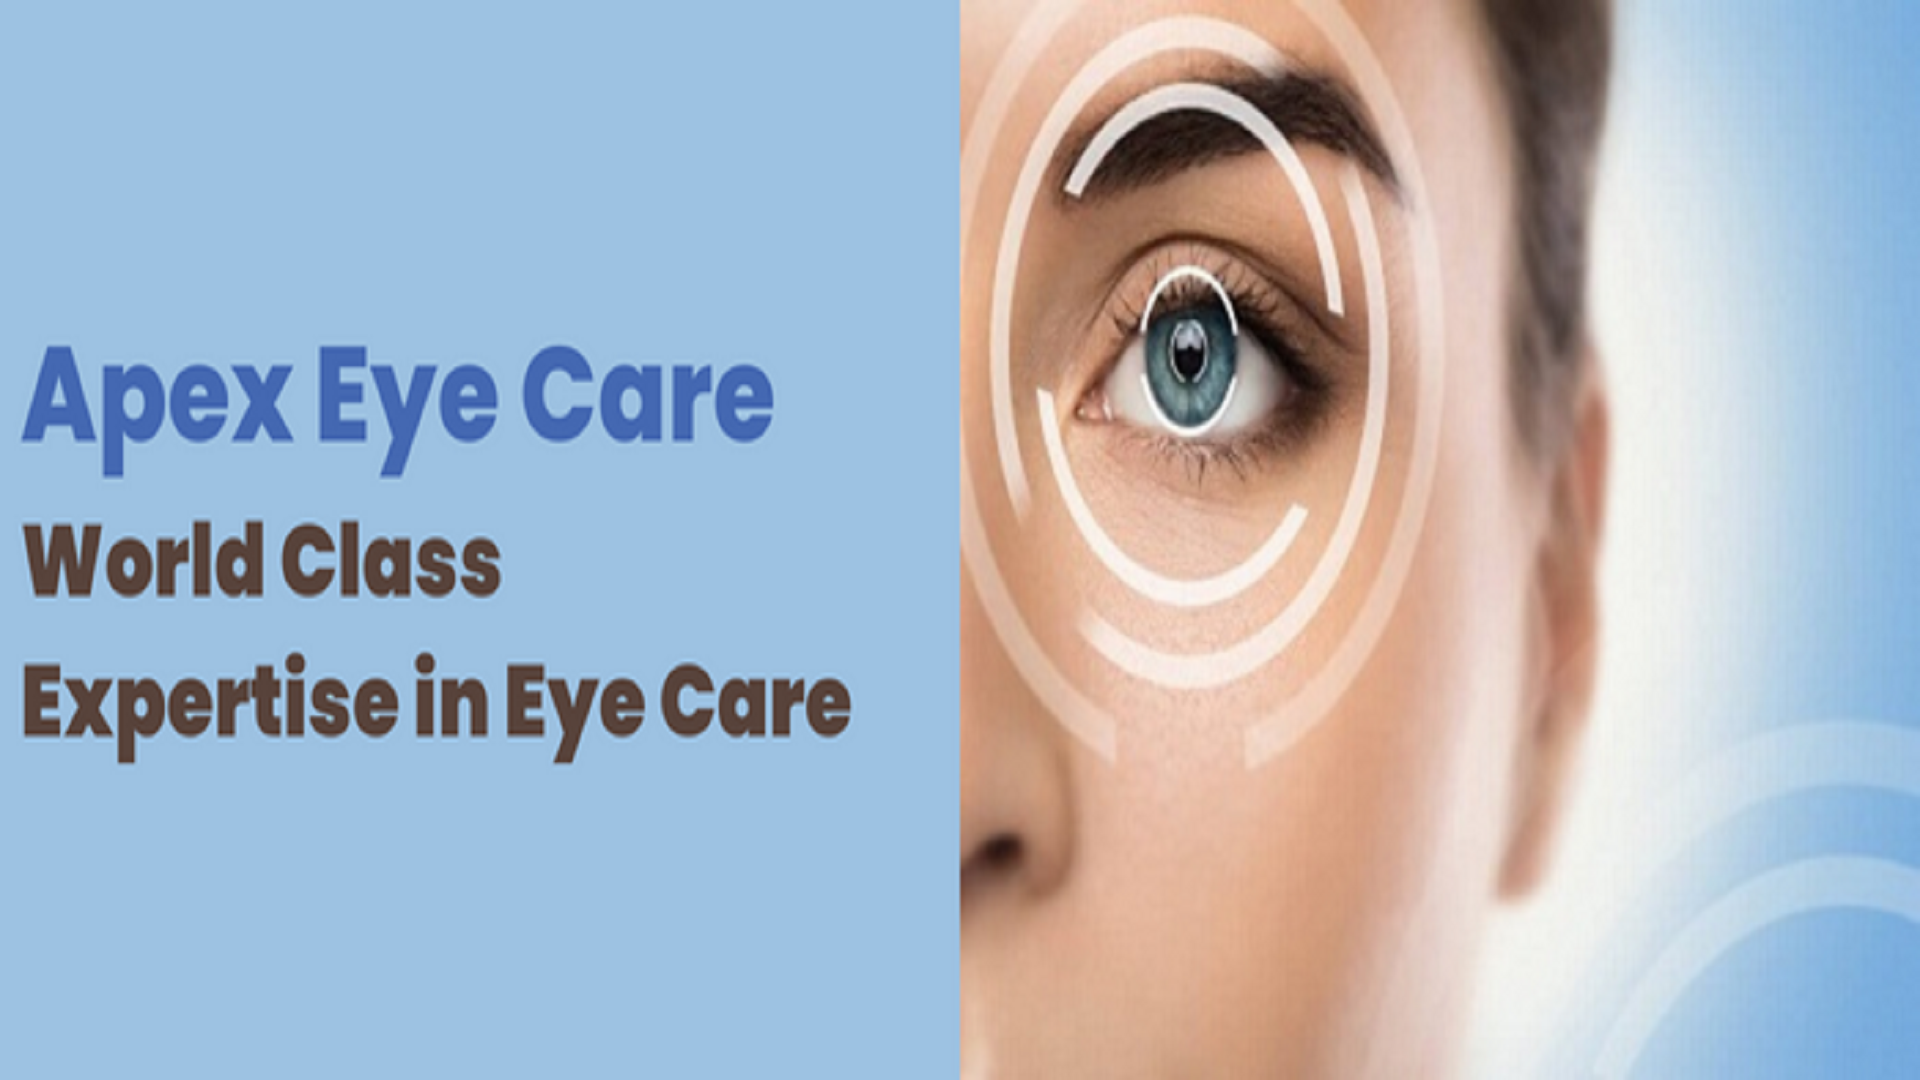 Apex Eye Care